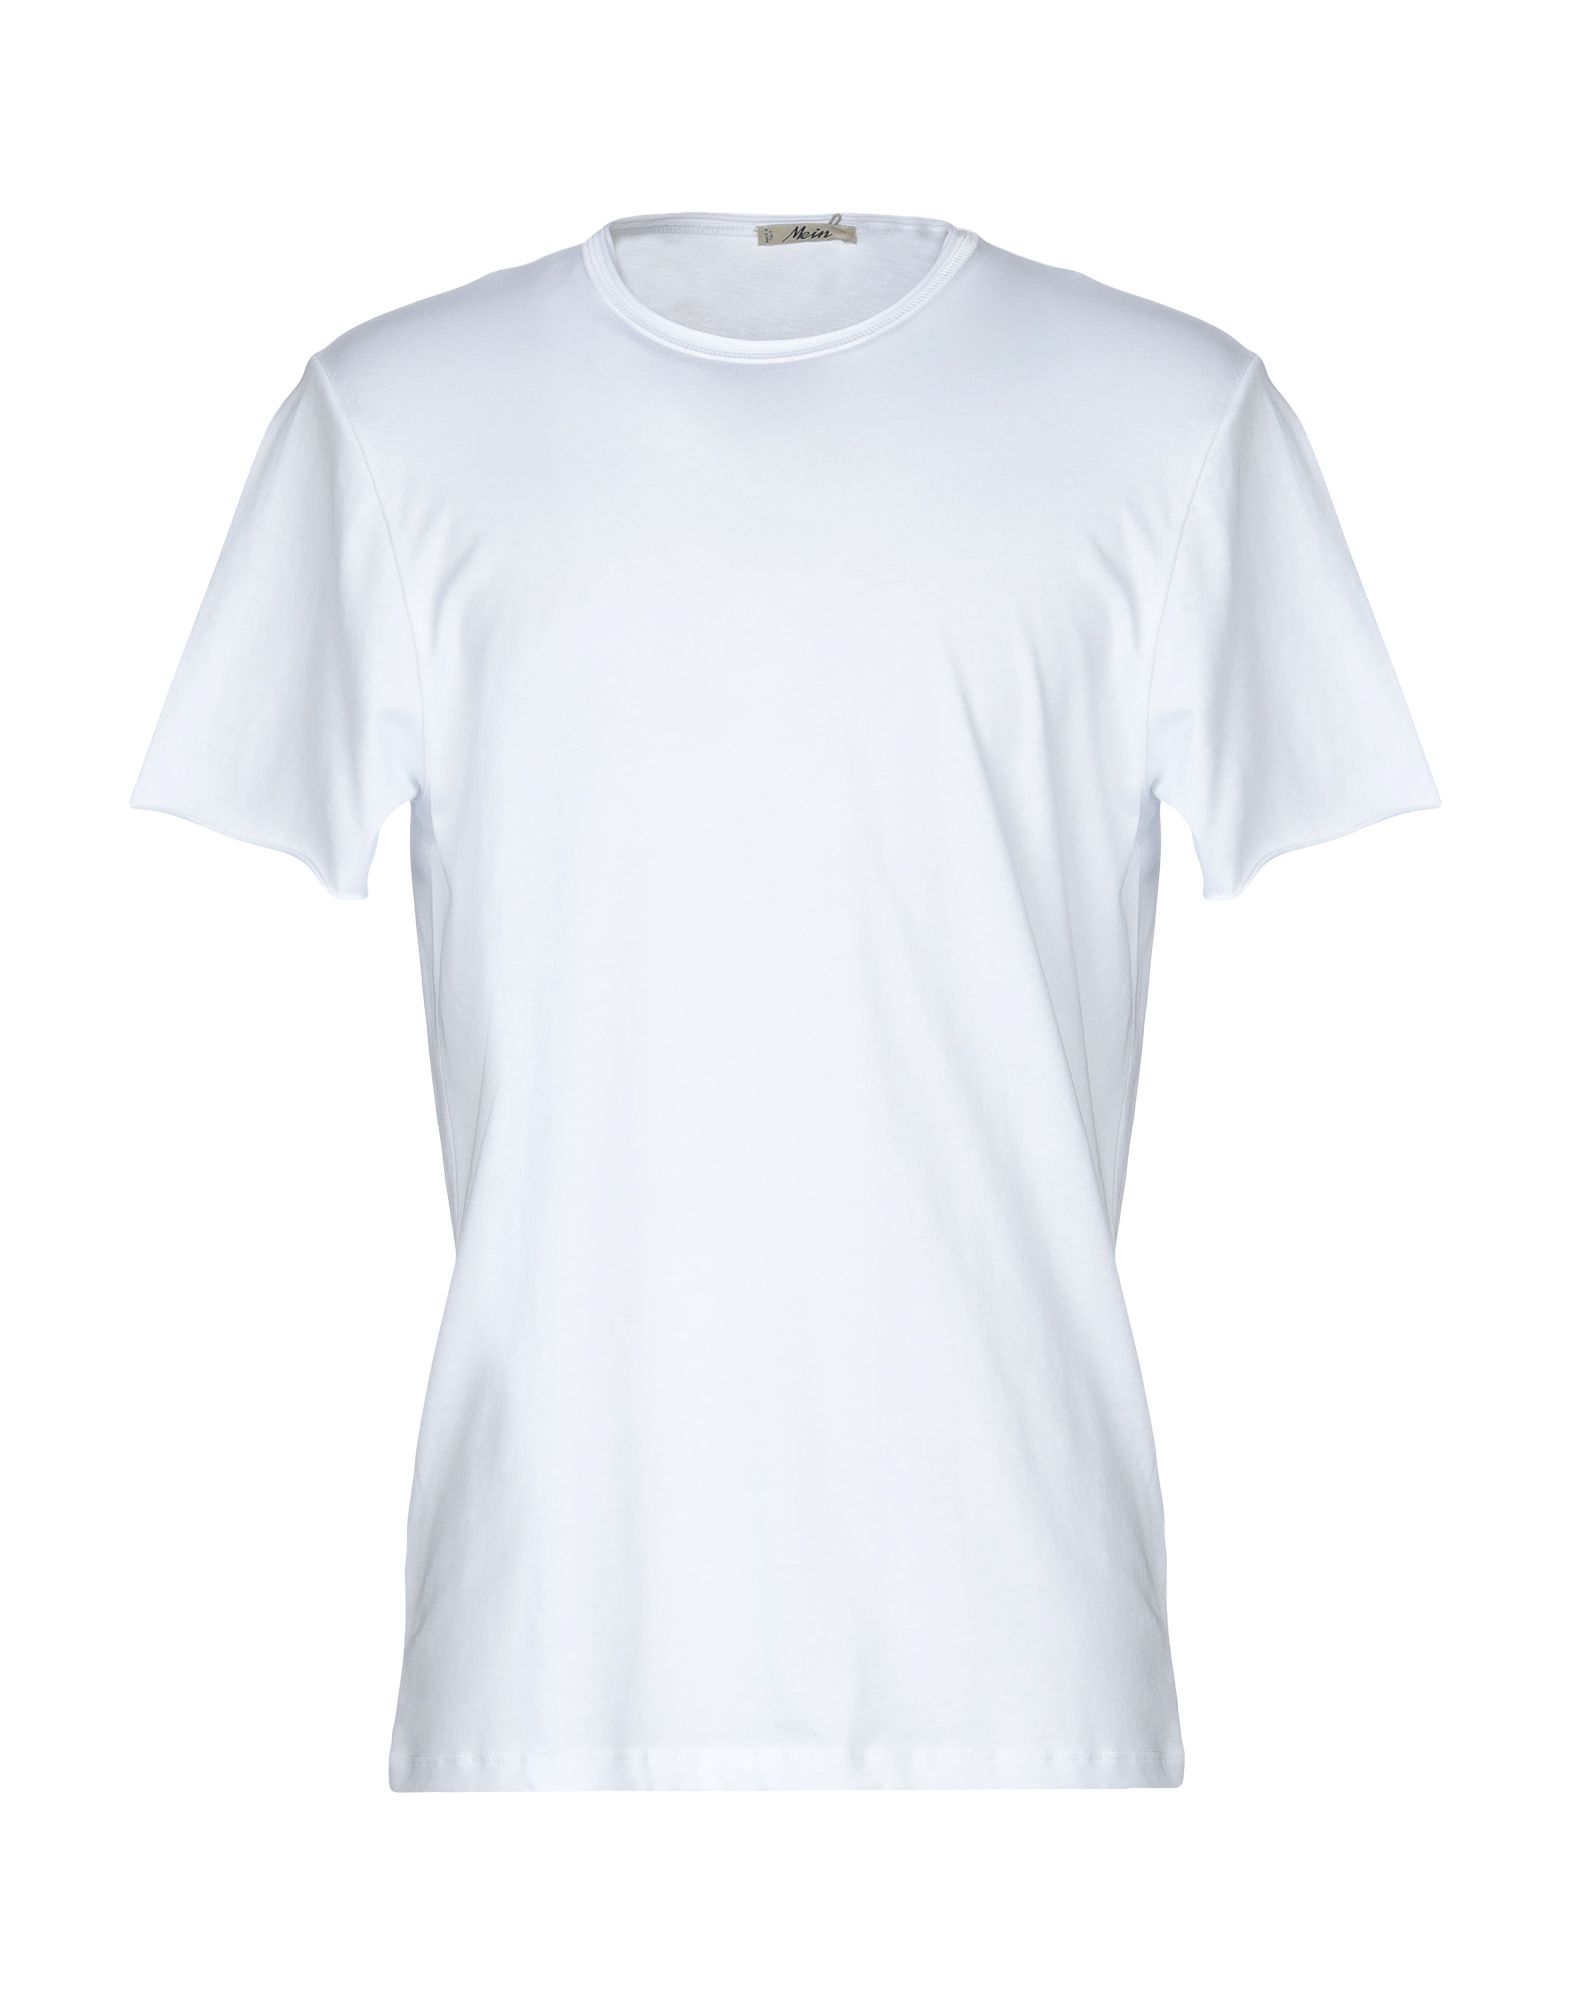 《送料無料》MEIN メンズ T シャツ ホワイト 52 コットン 100%